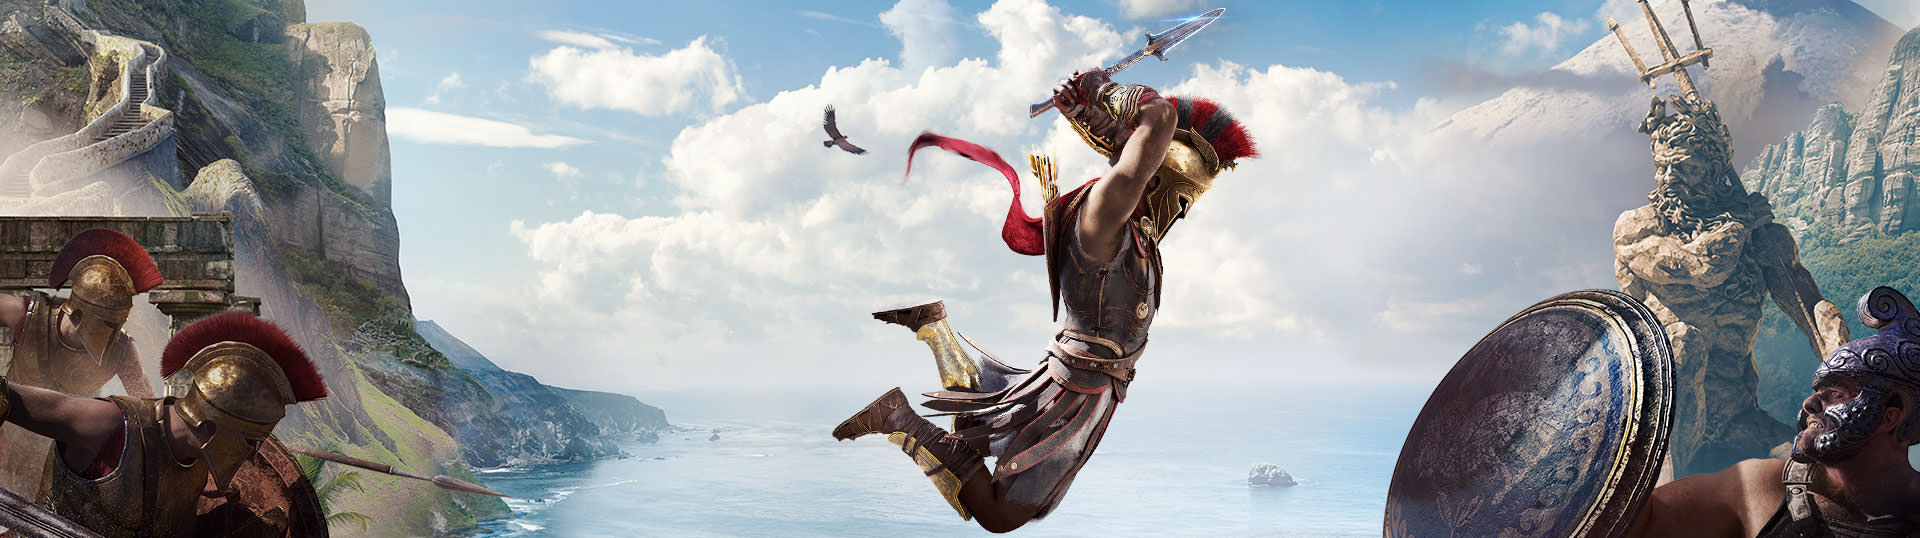 Ассасин крид одиссей от механиков. Assassins Creed Одиссея Gold Edition. Assassin's Creed Odyssey Gold Edition ps4. Архидам Assassins Creed Odyssey. Assassin's Creed Odyssey Spartan Edition.